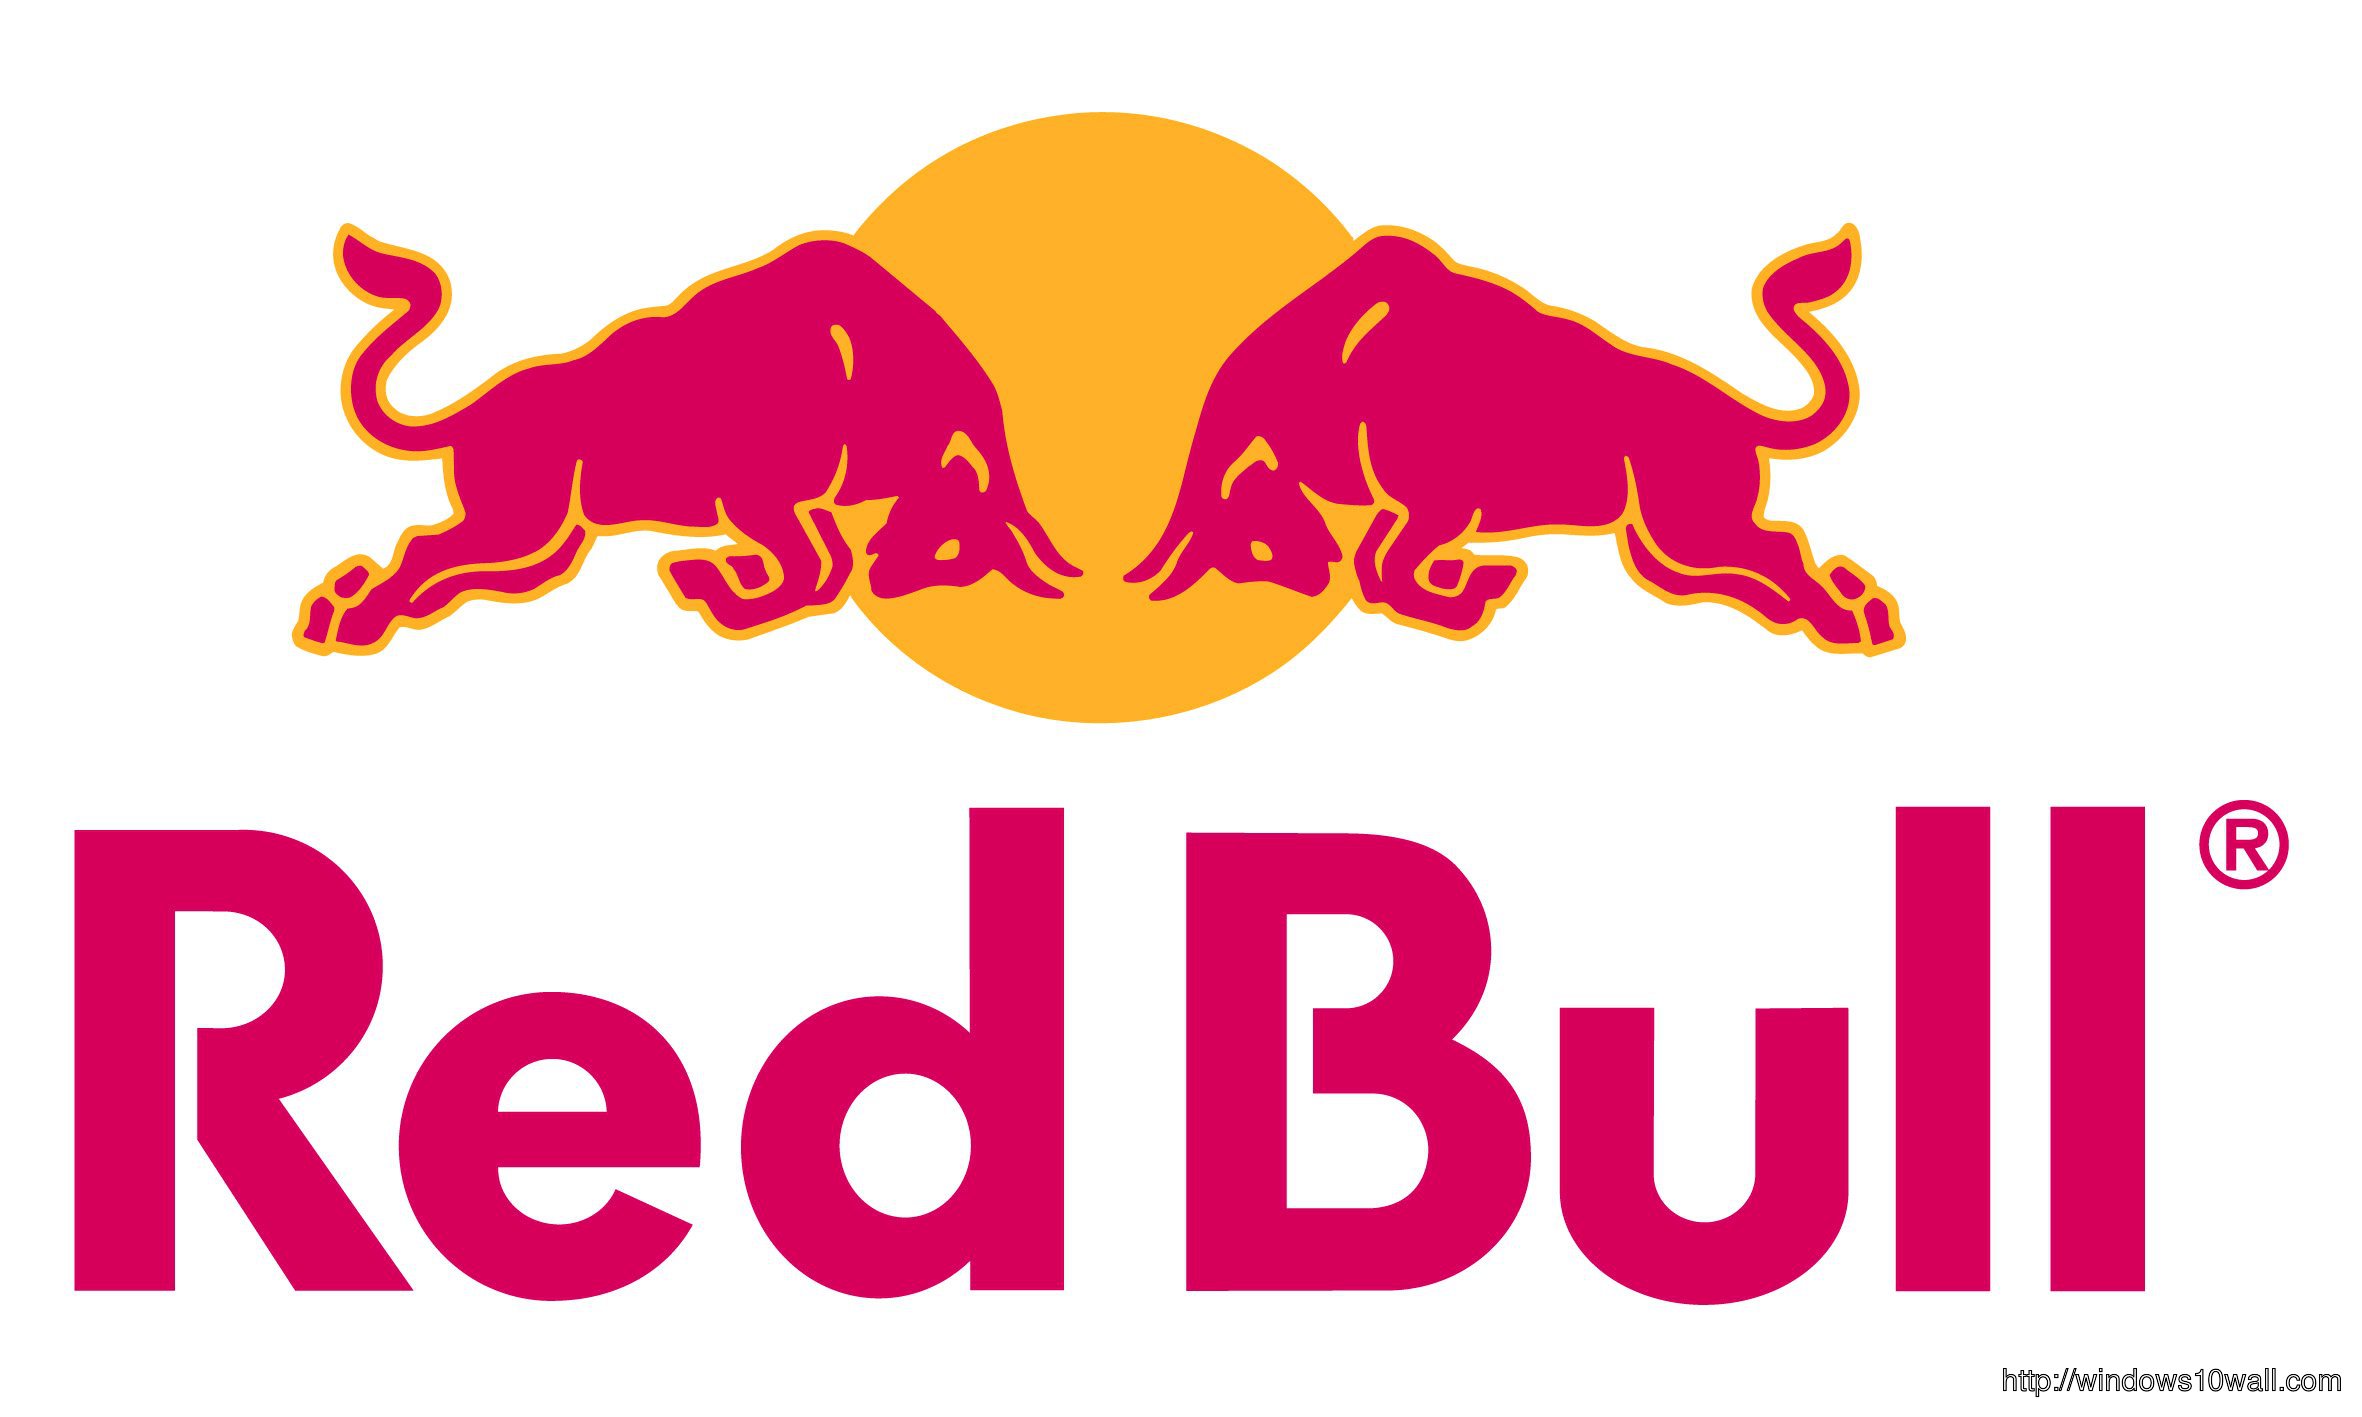 red-bull-logo